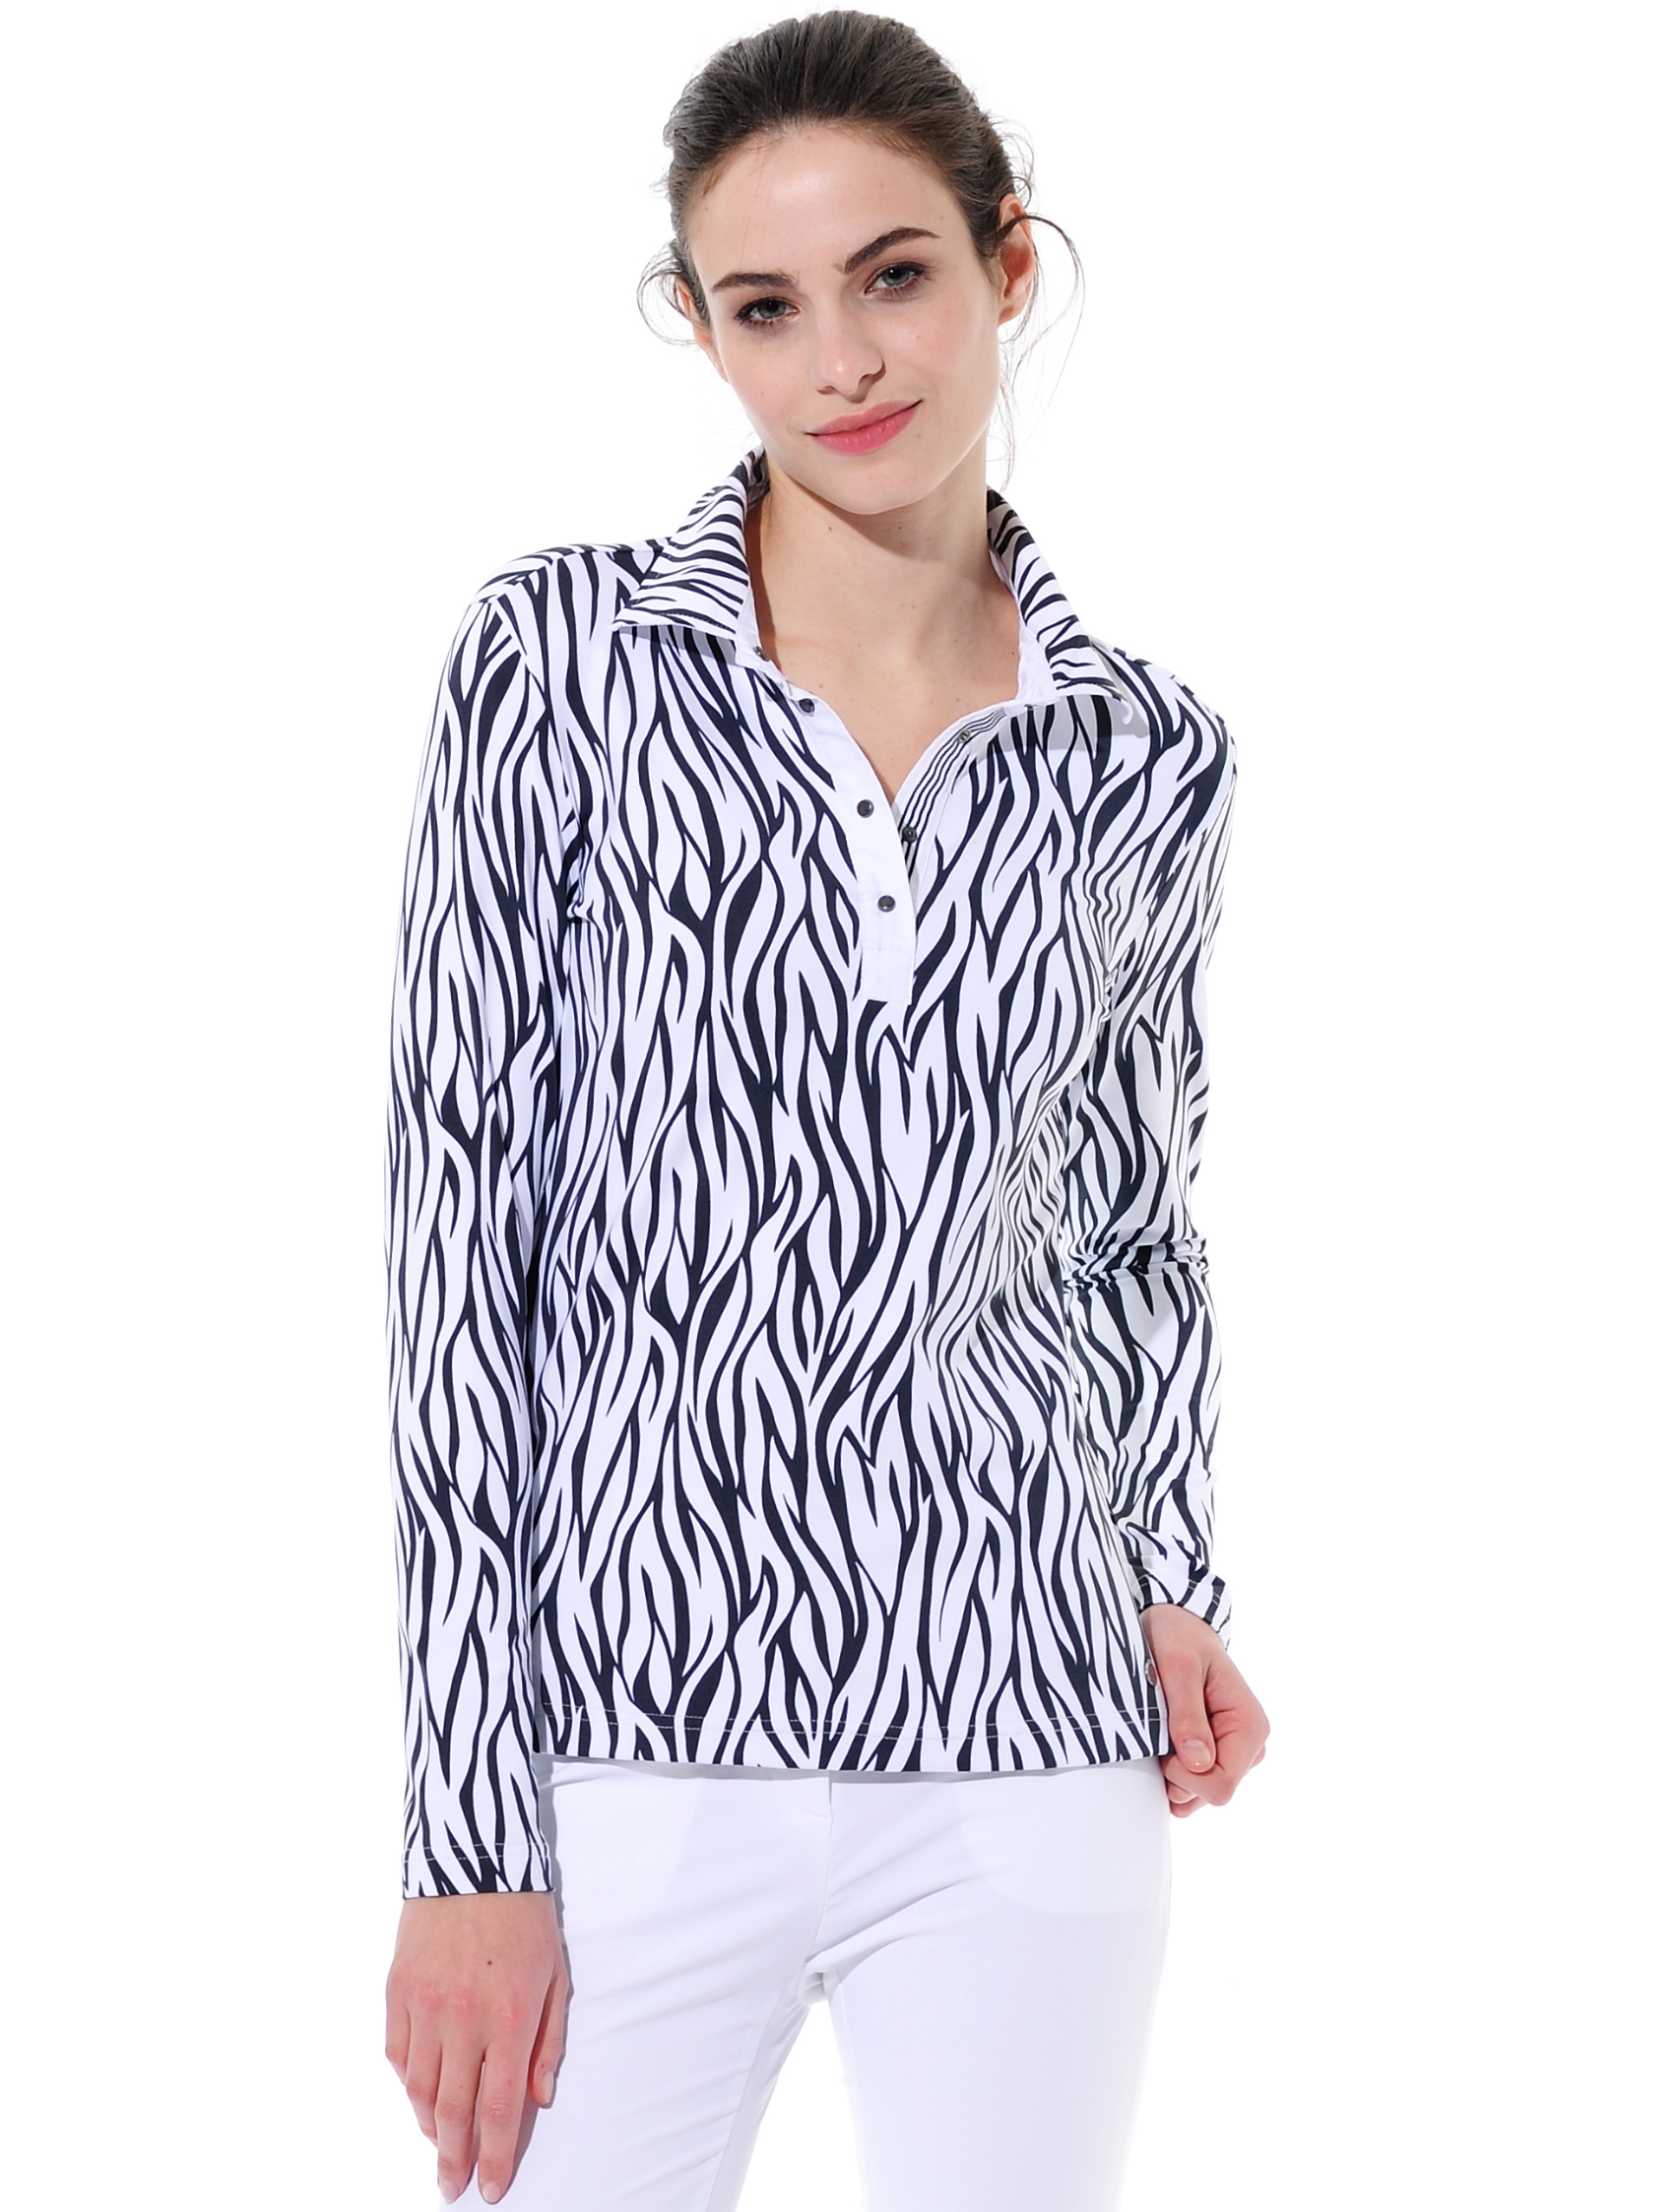 Zebra Skin print polo shirt black/white 